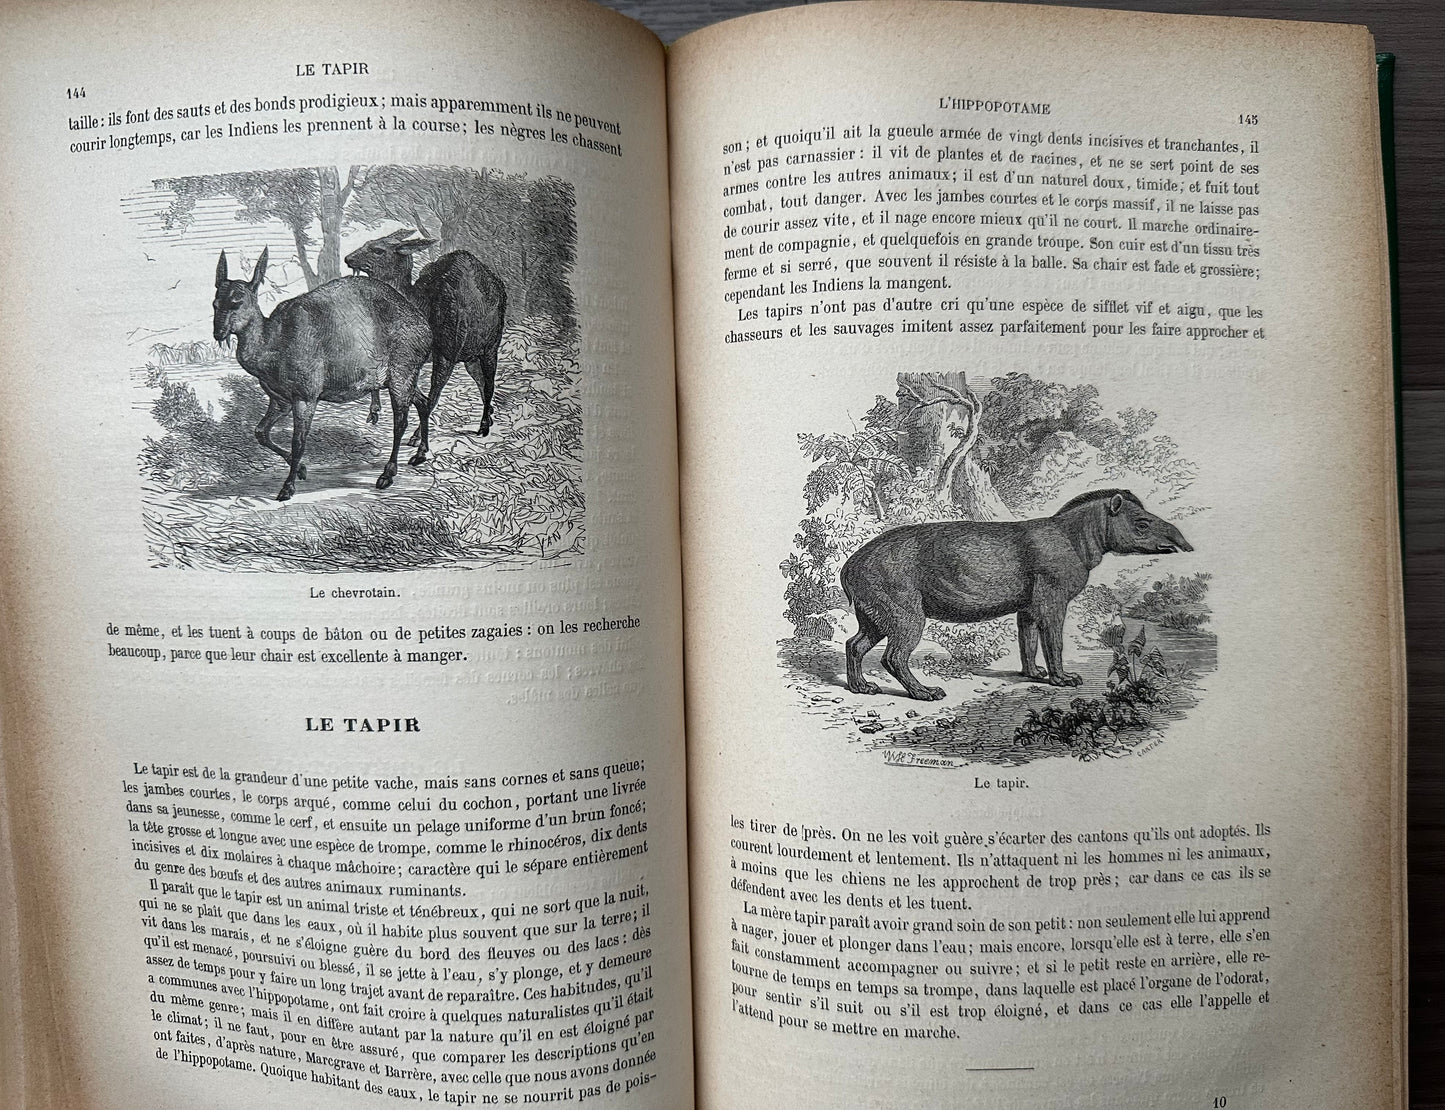 1883 Natural History by Buffon